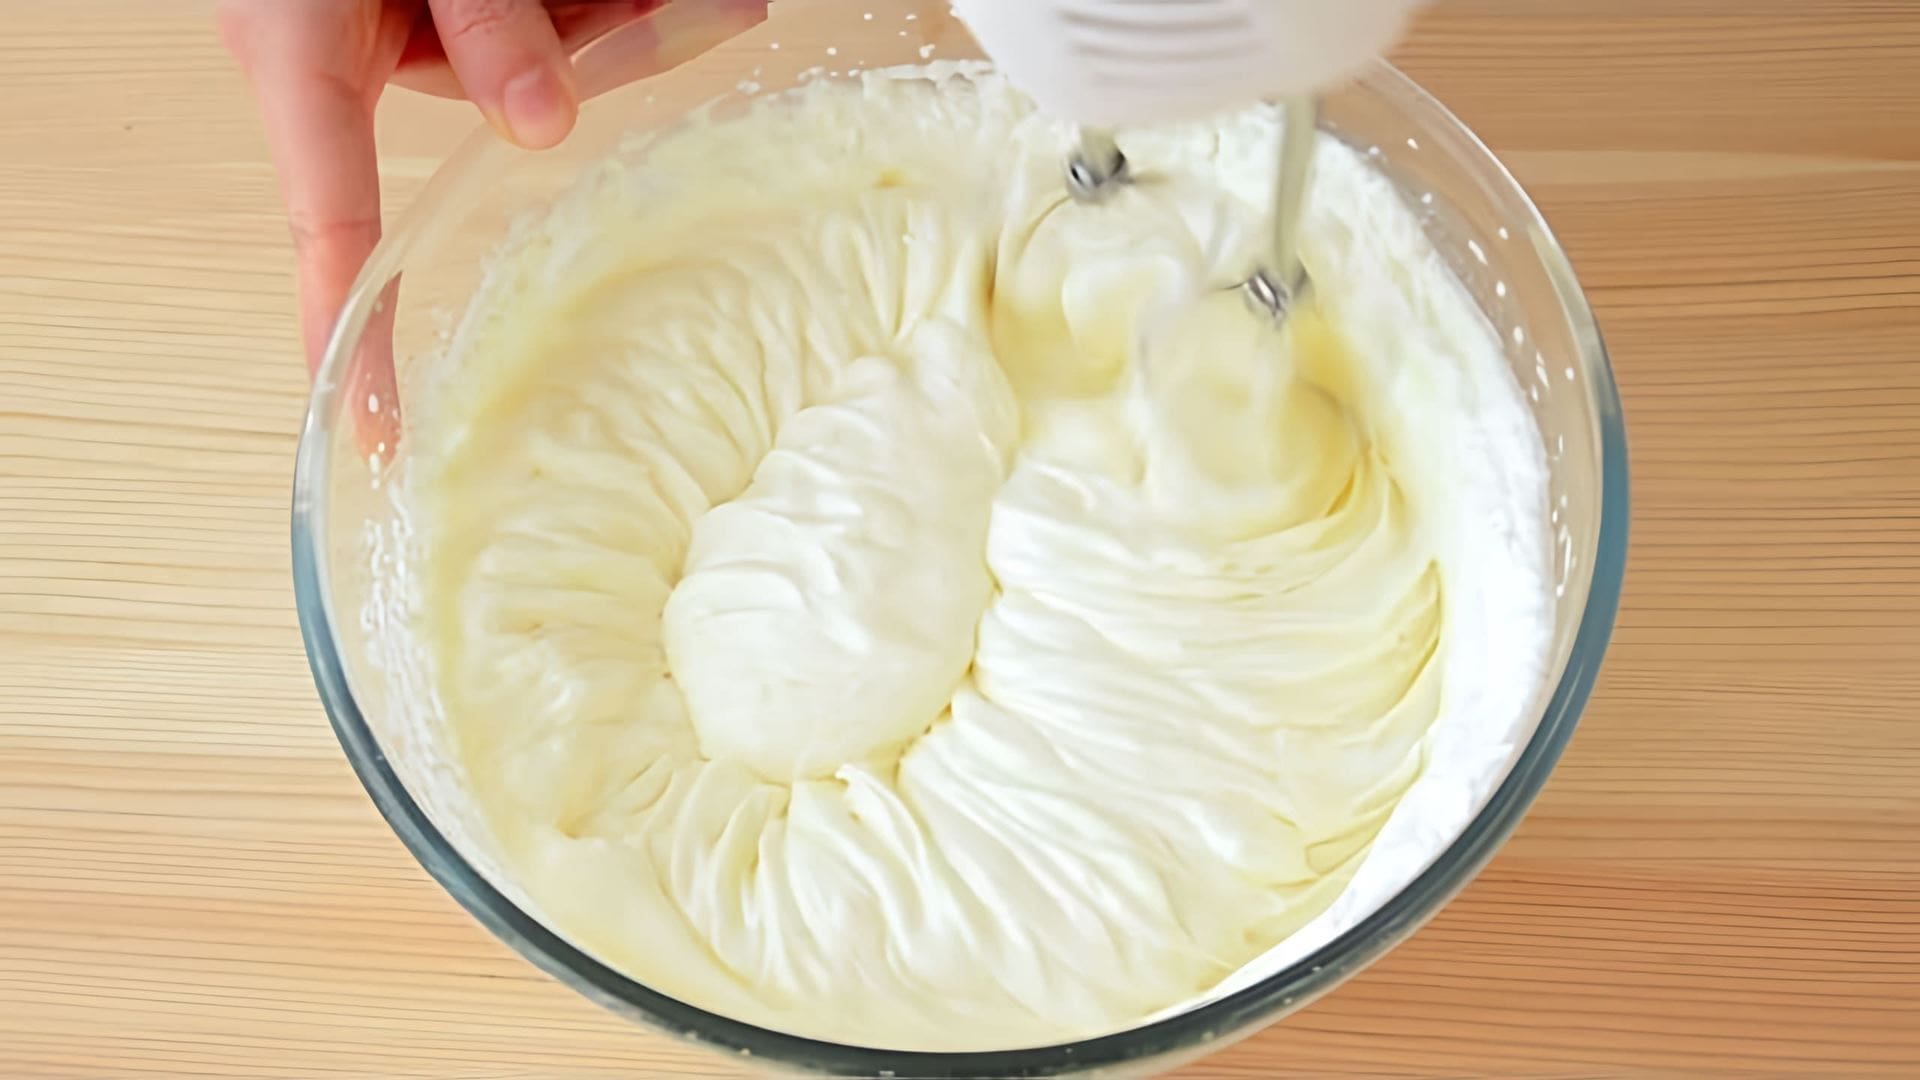 В этом видео демонстрируется процесс приготовления крема "Крем пломбир" или "Крем Дипломат"